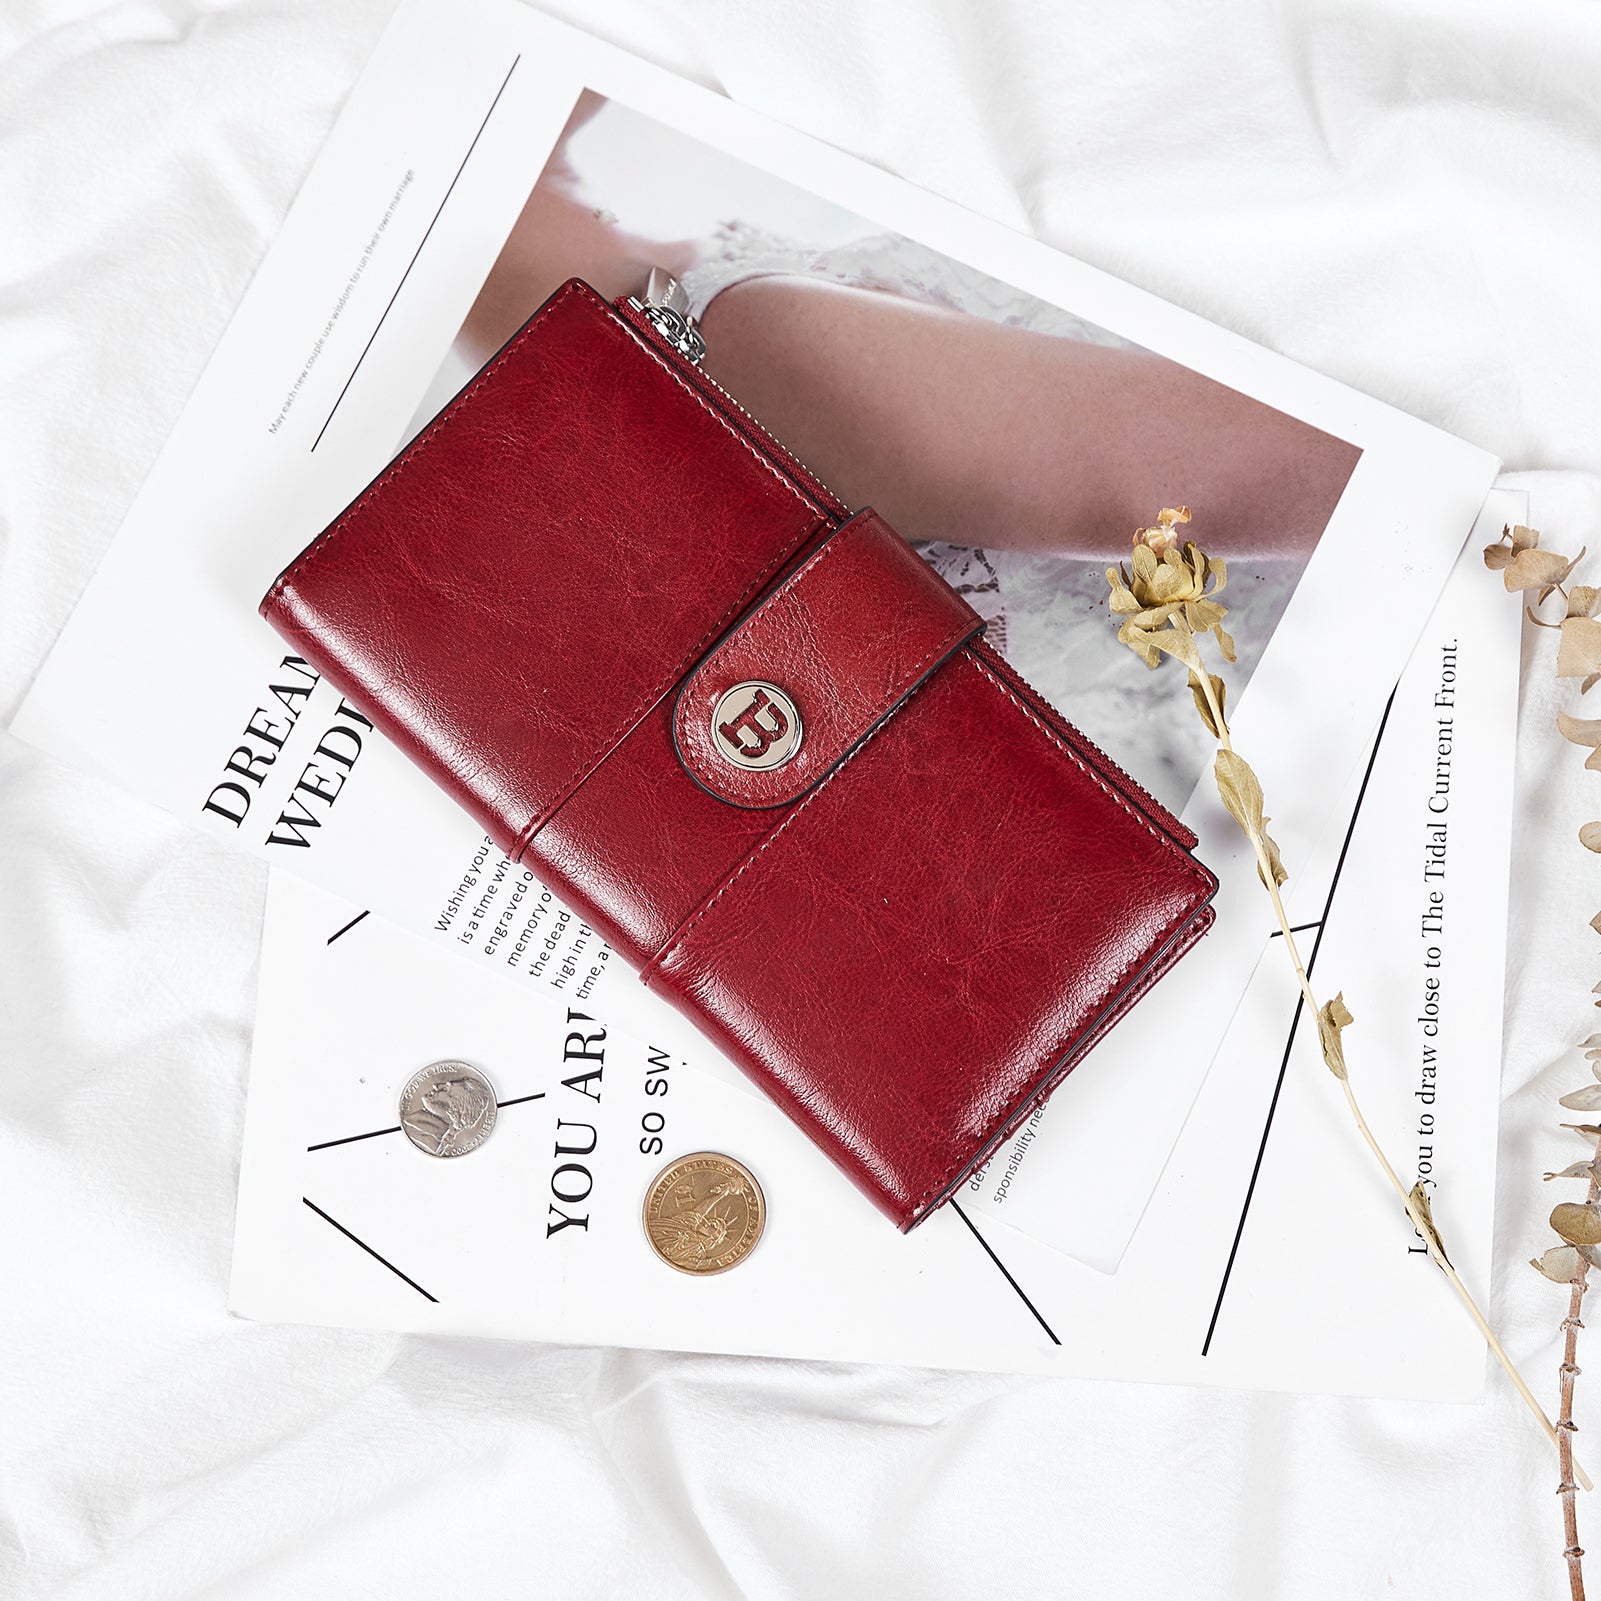 Ladies Purse Wallet PU Leather Long Women Wallet Card Holder Wallet Clutch  Wallet with Zipper Pocket Coin Purse (Women Wallet 01, BLUE) price in UAE |  Amazon UAE | kanbkam